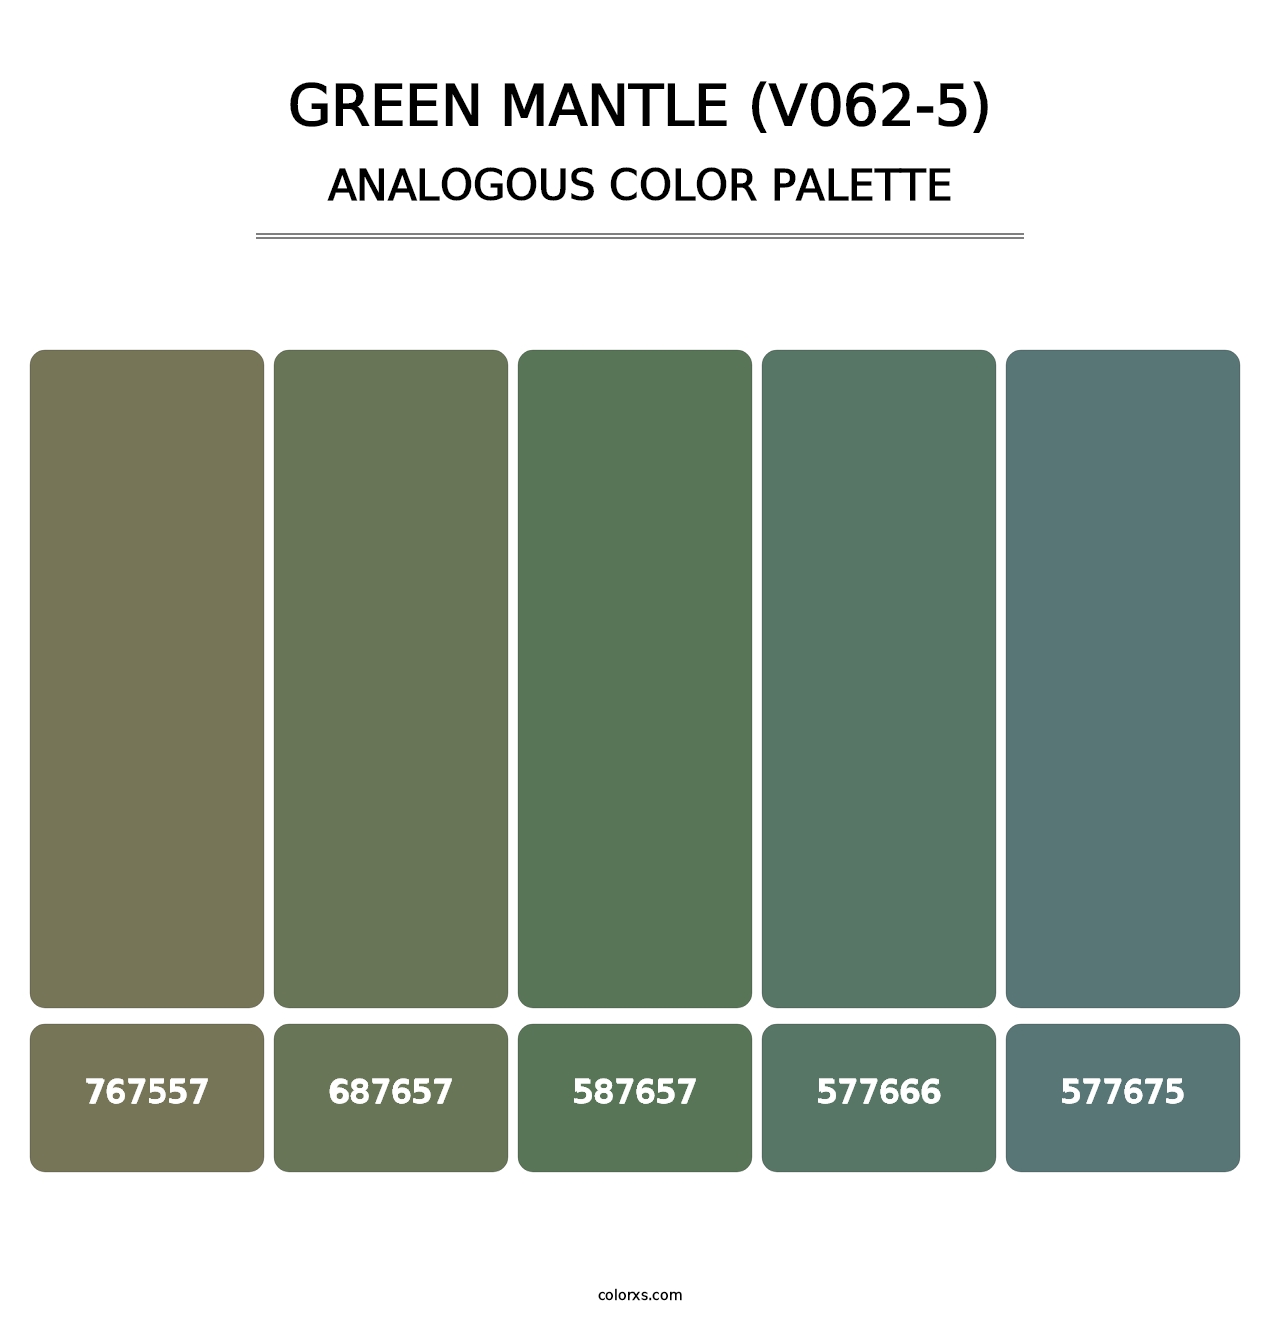 Green Mantle (V062-5) - Analogous Color Palette